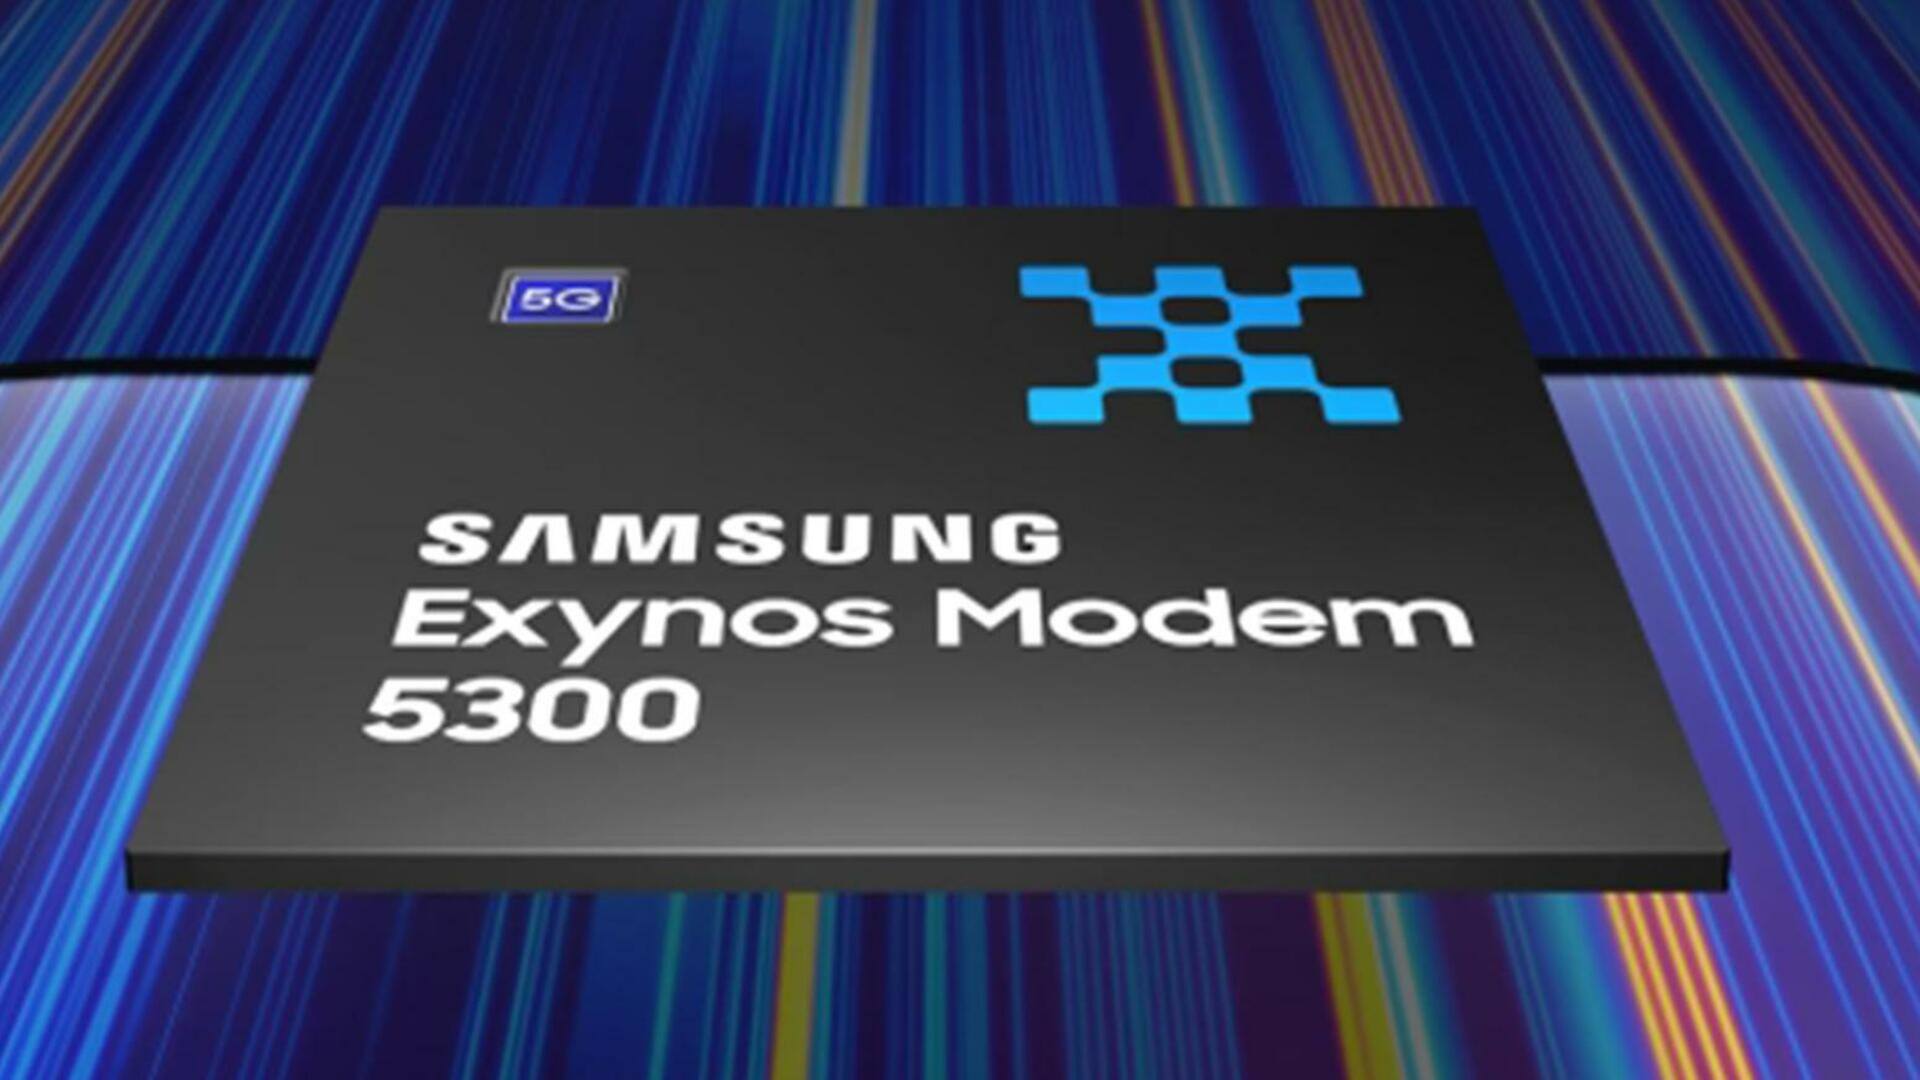 सैमसंग के एक्सिनोस मॉडेम 5300 में मिलेगी 10Gbps तक डाऊनलोड स्पीड की सुविधा